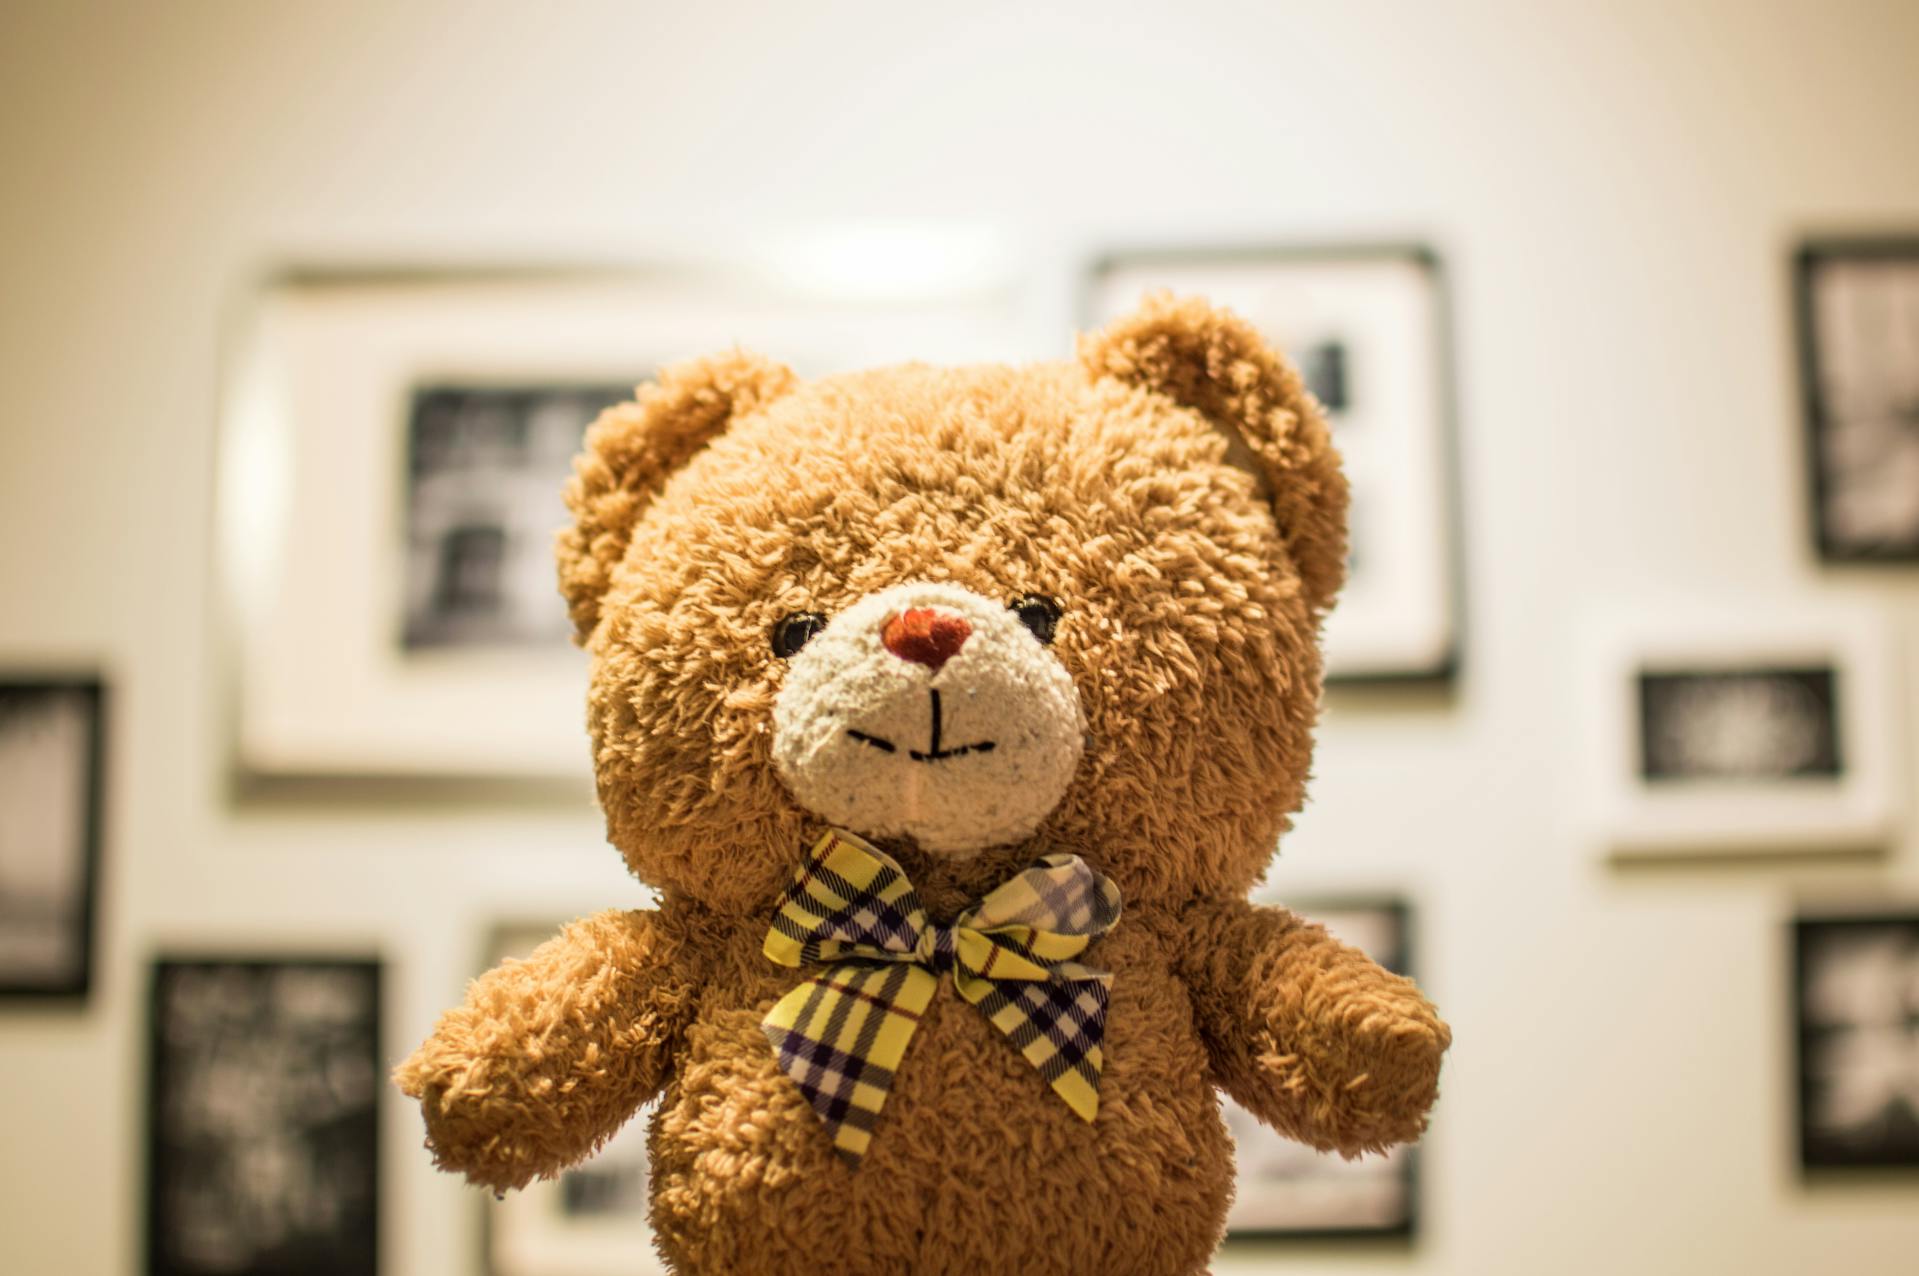 A brown teddy bear | Source: Pexels